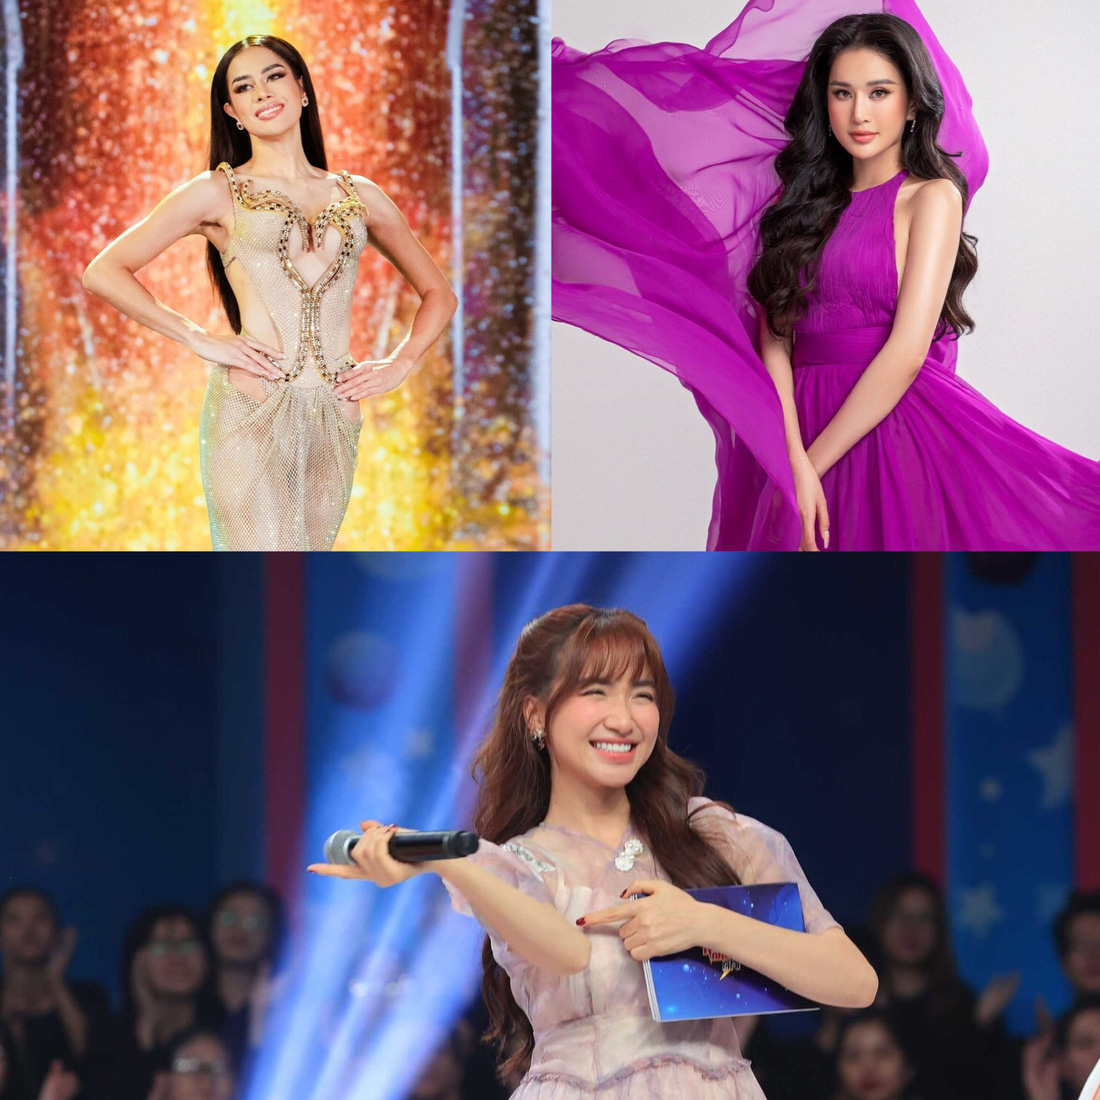 Chọn người đẹp Philippines làm Á hậu 5 gây tranh cãi, Hòa Minzy làm MC Nhanh như chớp nhí - Ảnh 1.